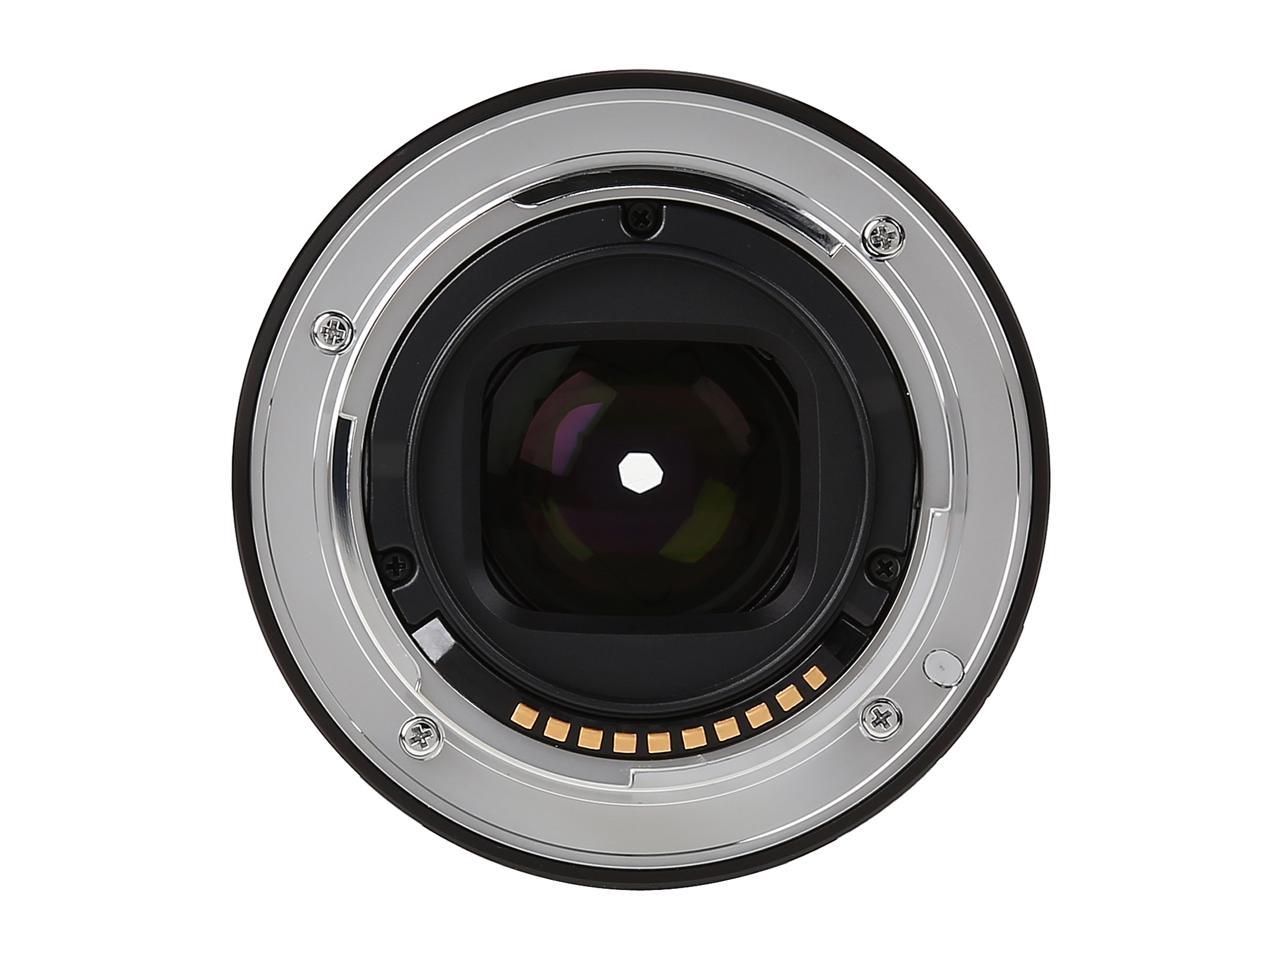 SONY SEL50F18/B Compact ILC Lenses 50mm F1.8 OSS Lens Black